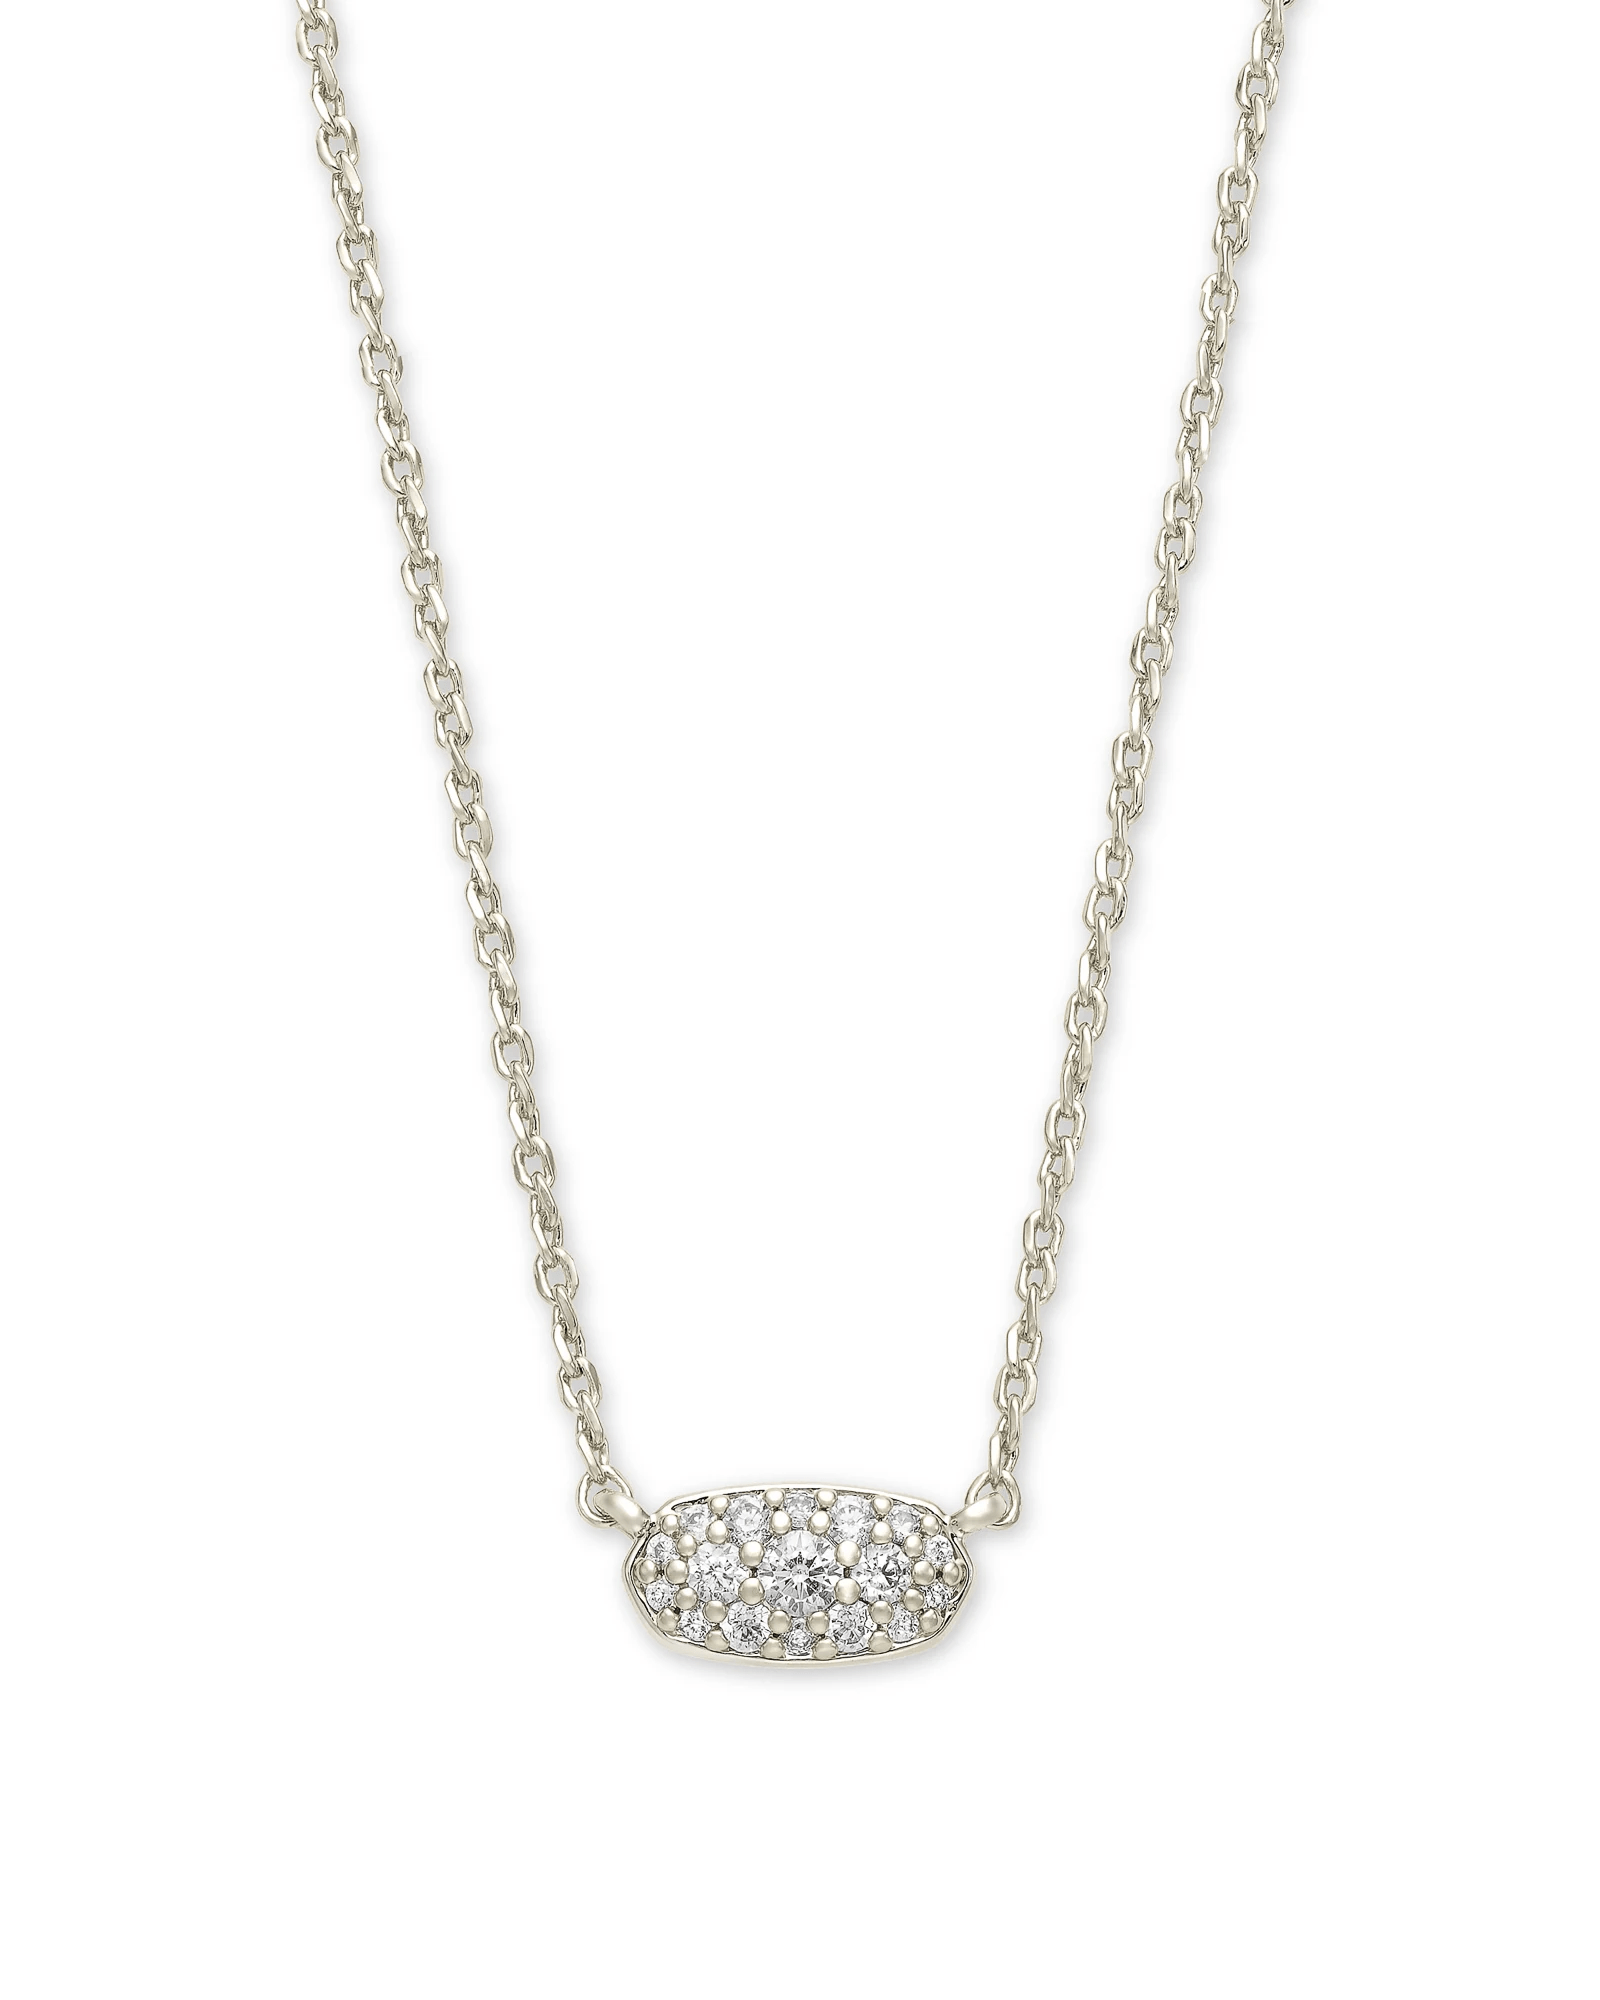 Kendra Scott Women - Accessories - Earrings Grayson Silver Pendant Necklace in White Crystal | Kendra Scott